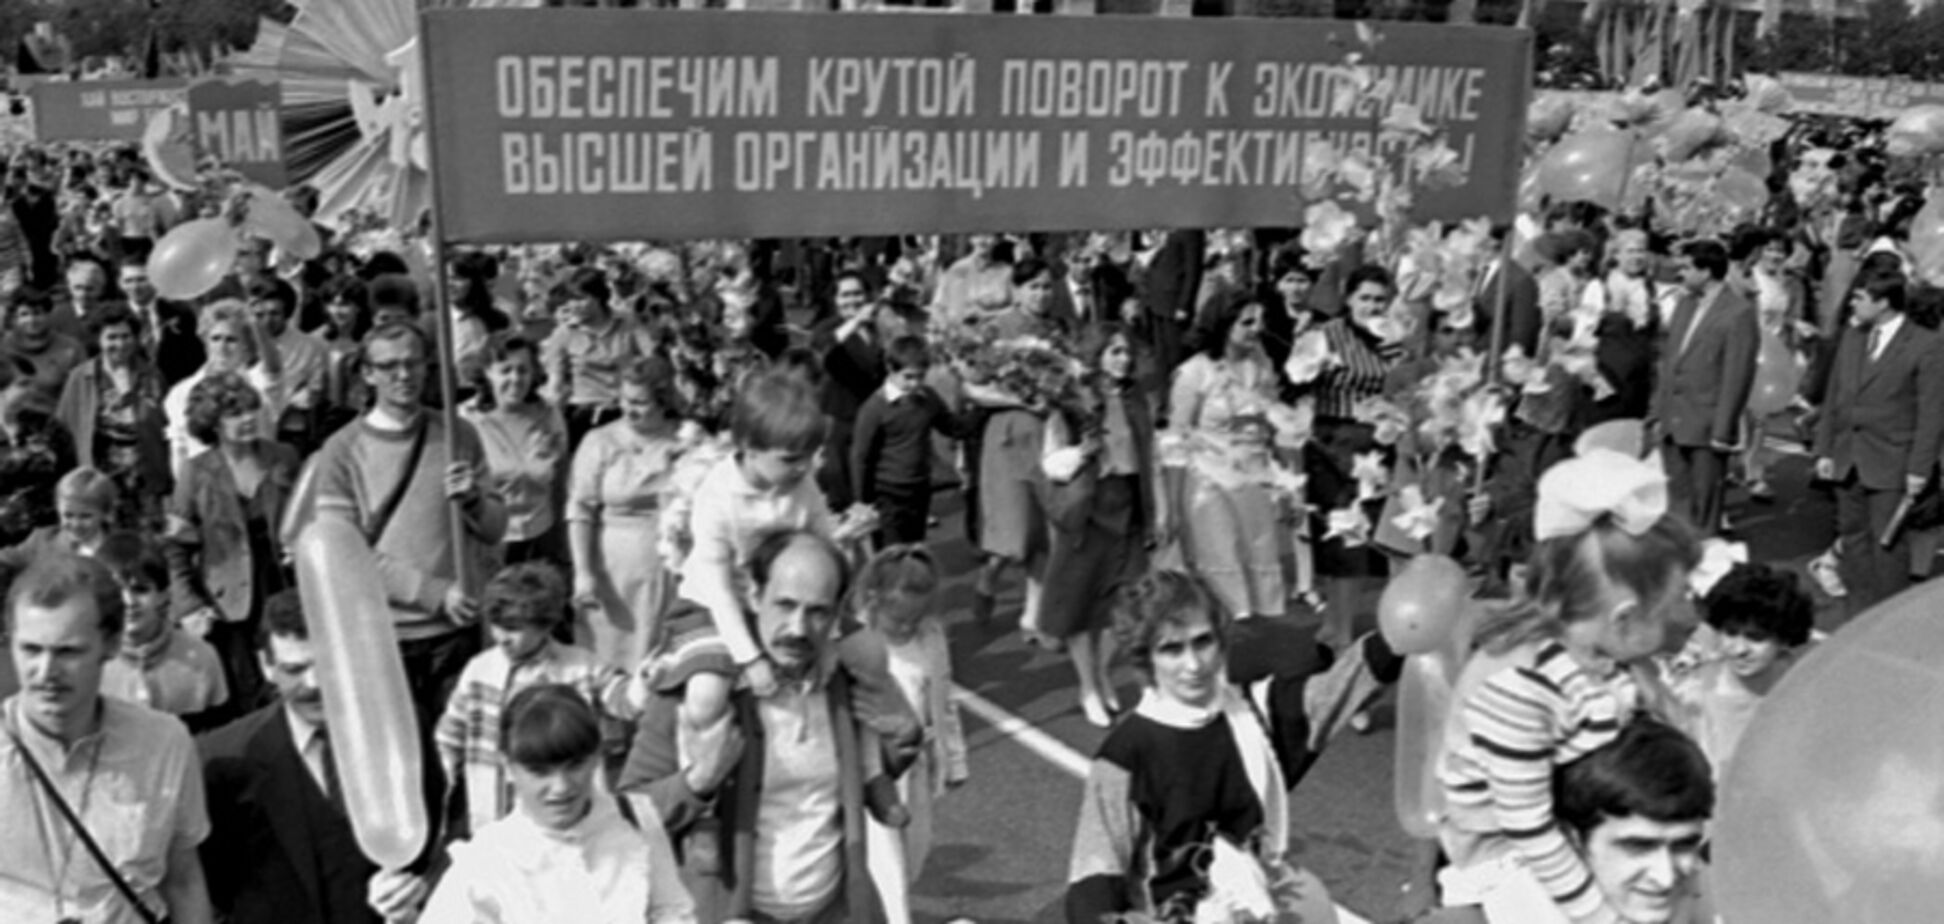 Як влада СРСР влаштувала першотравневий мітинг, приховуючи катастрофу на ЧАЕС: історія злочину